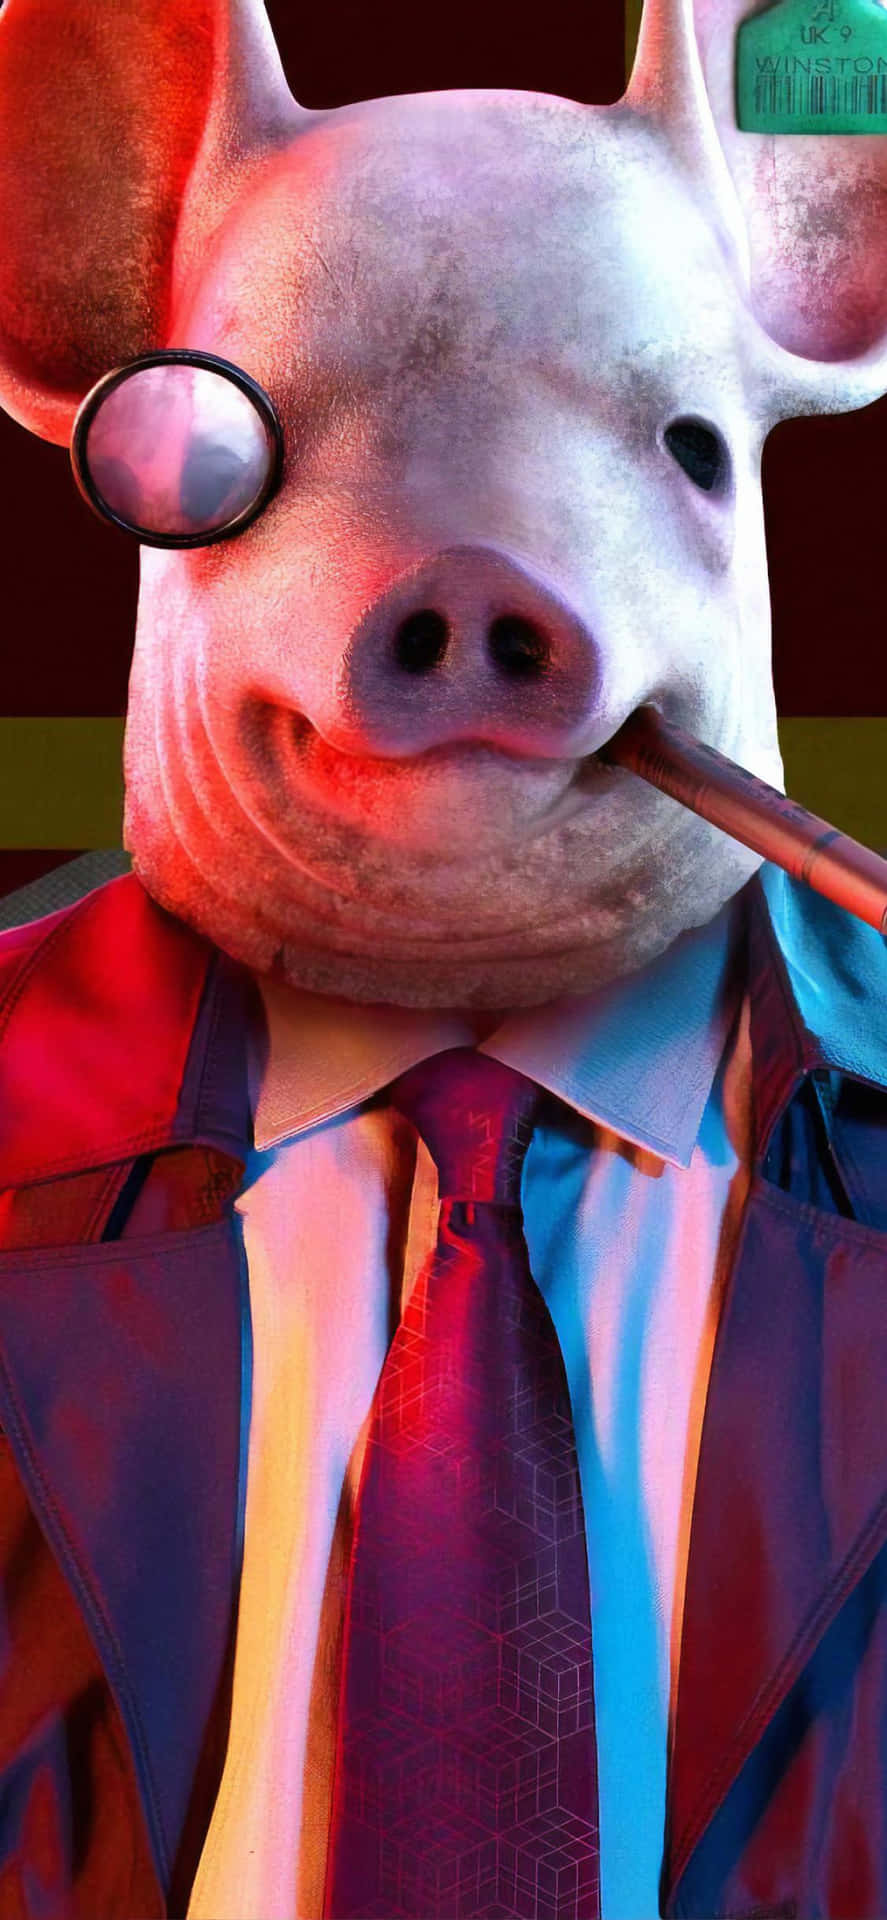 Personajede Cerdo De Watch Dog En Iphone Fondo de pantalla